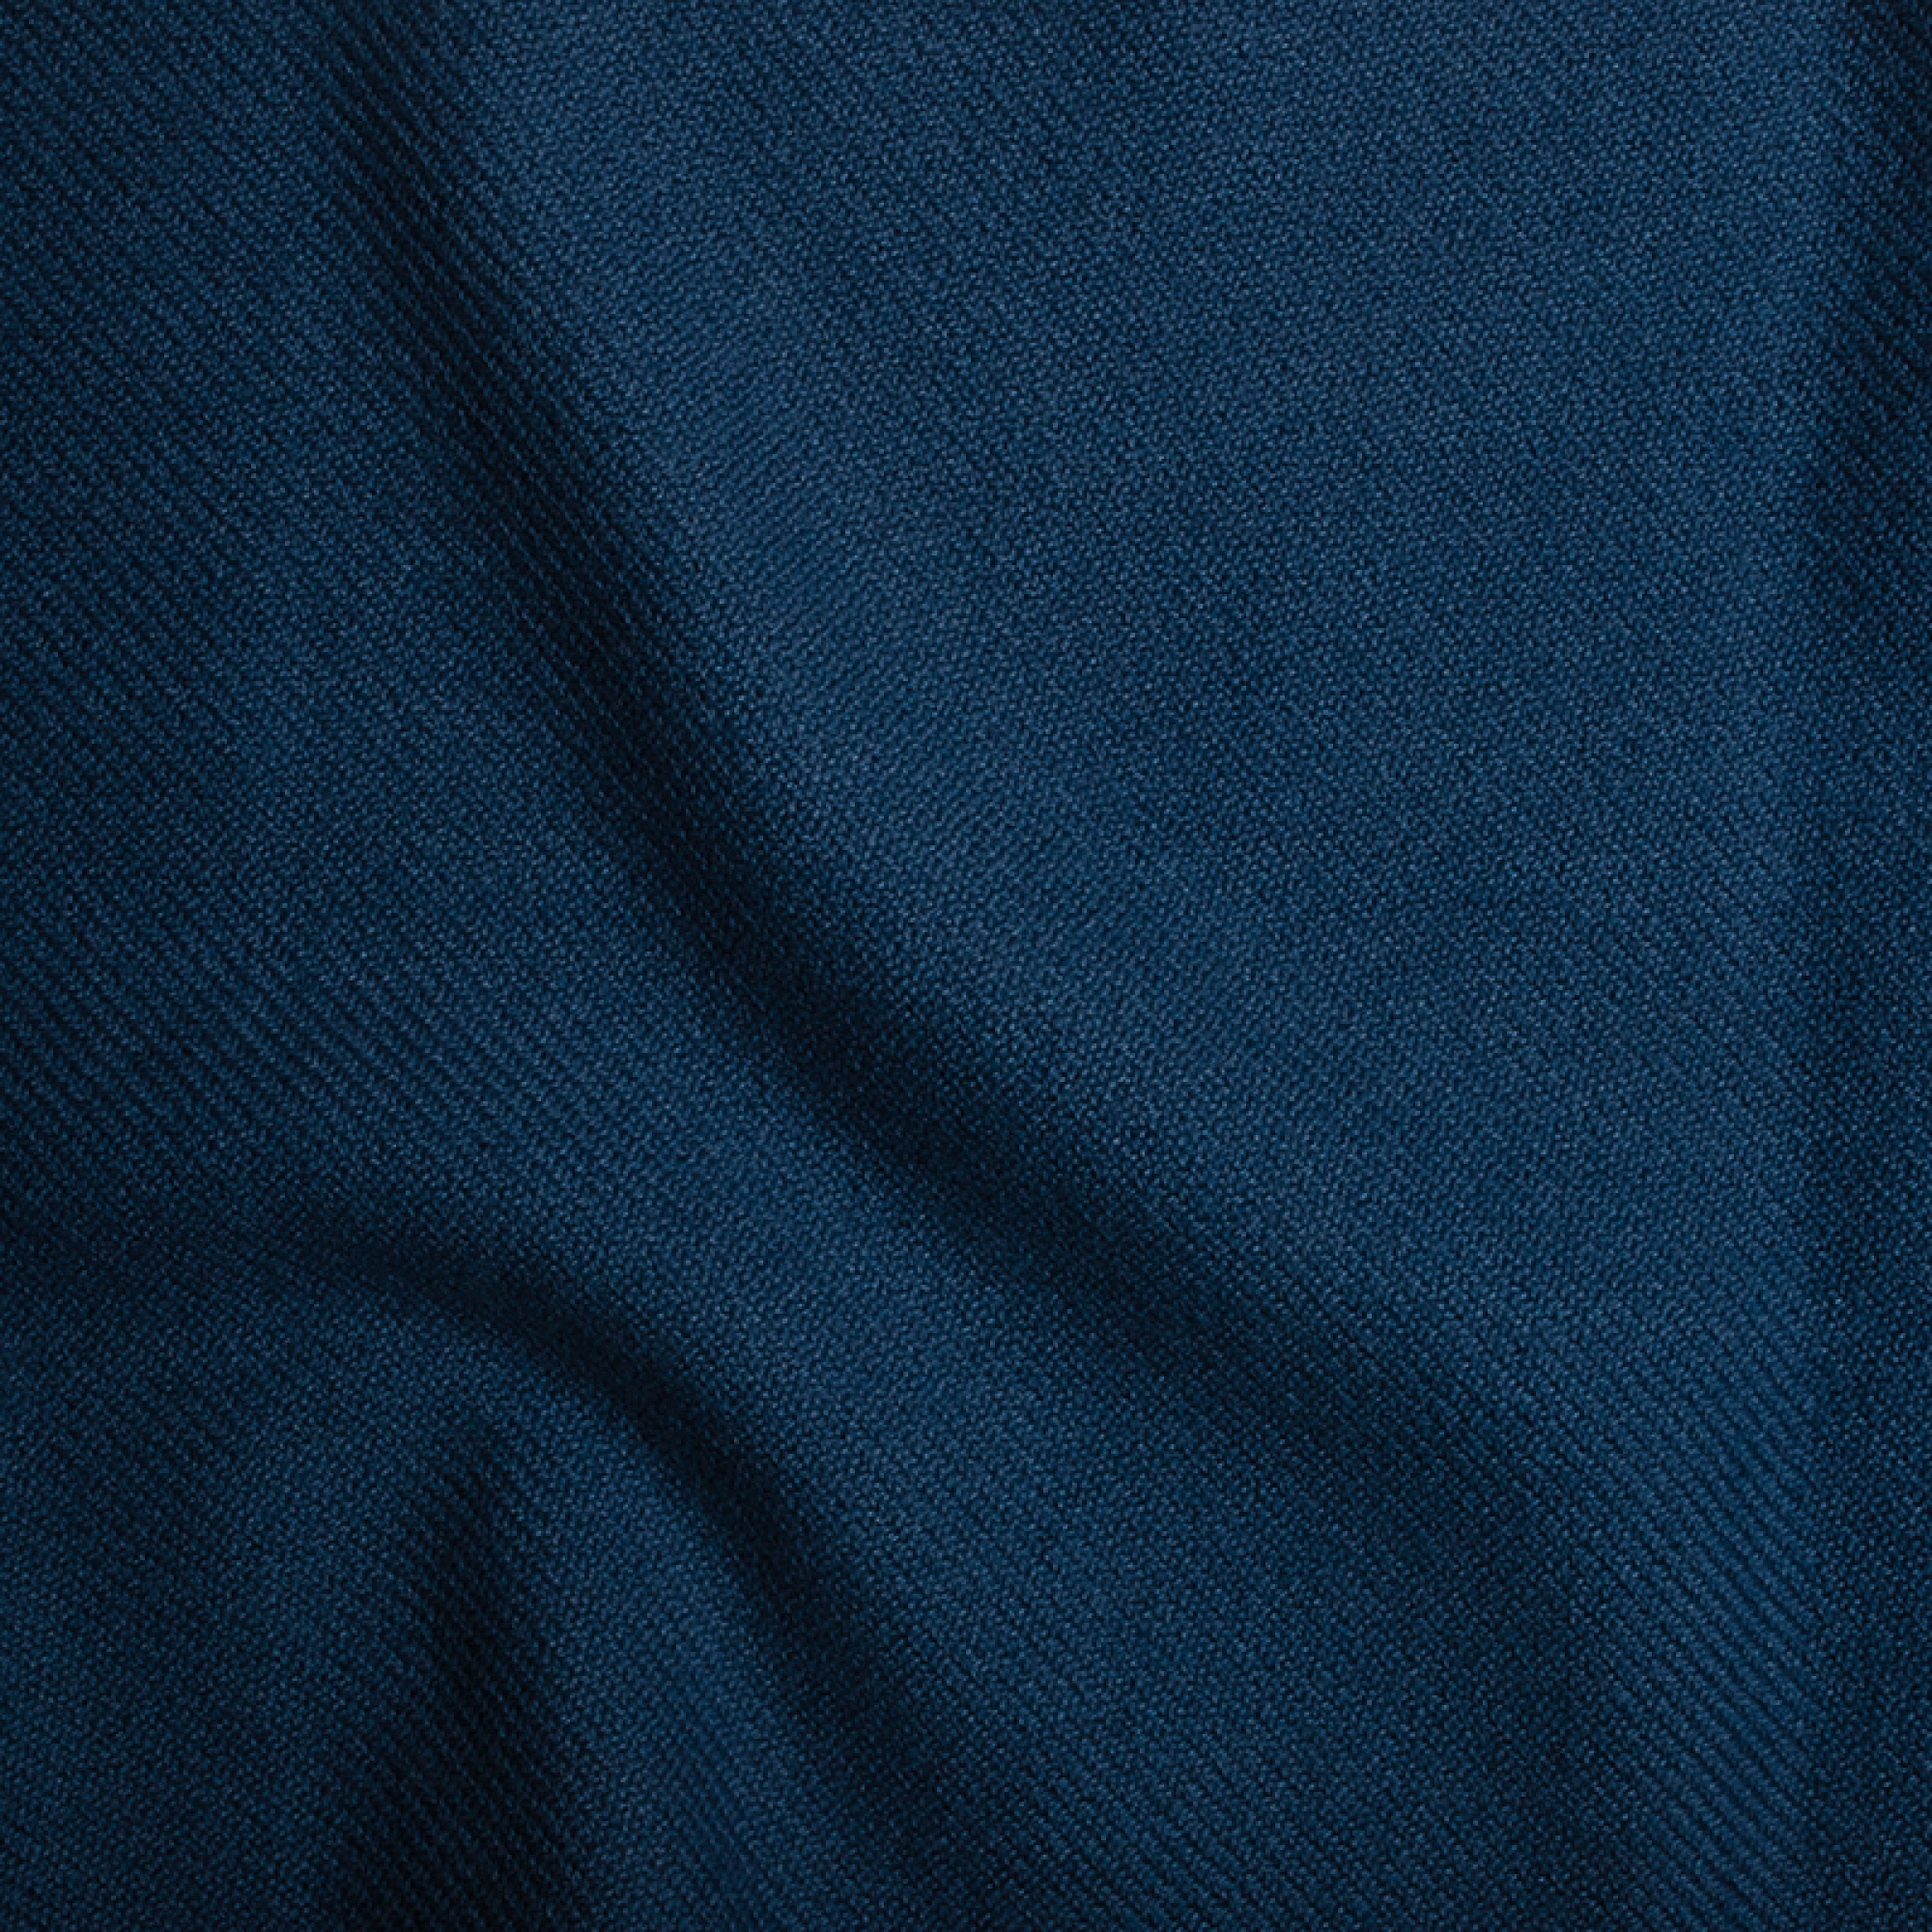 Cashmere accessories cocooning frisbi 147 x 203 dark blue 147 x 203 cm